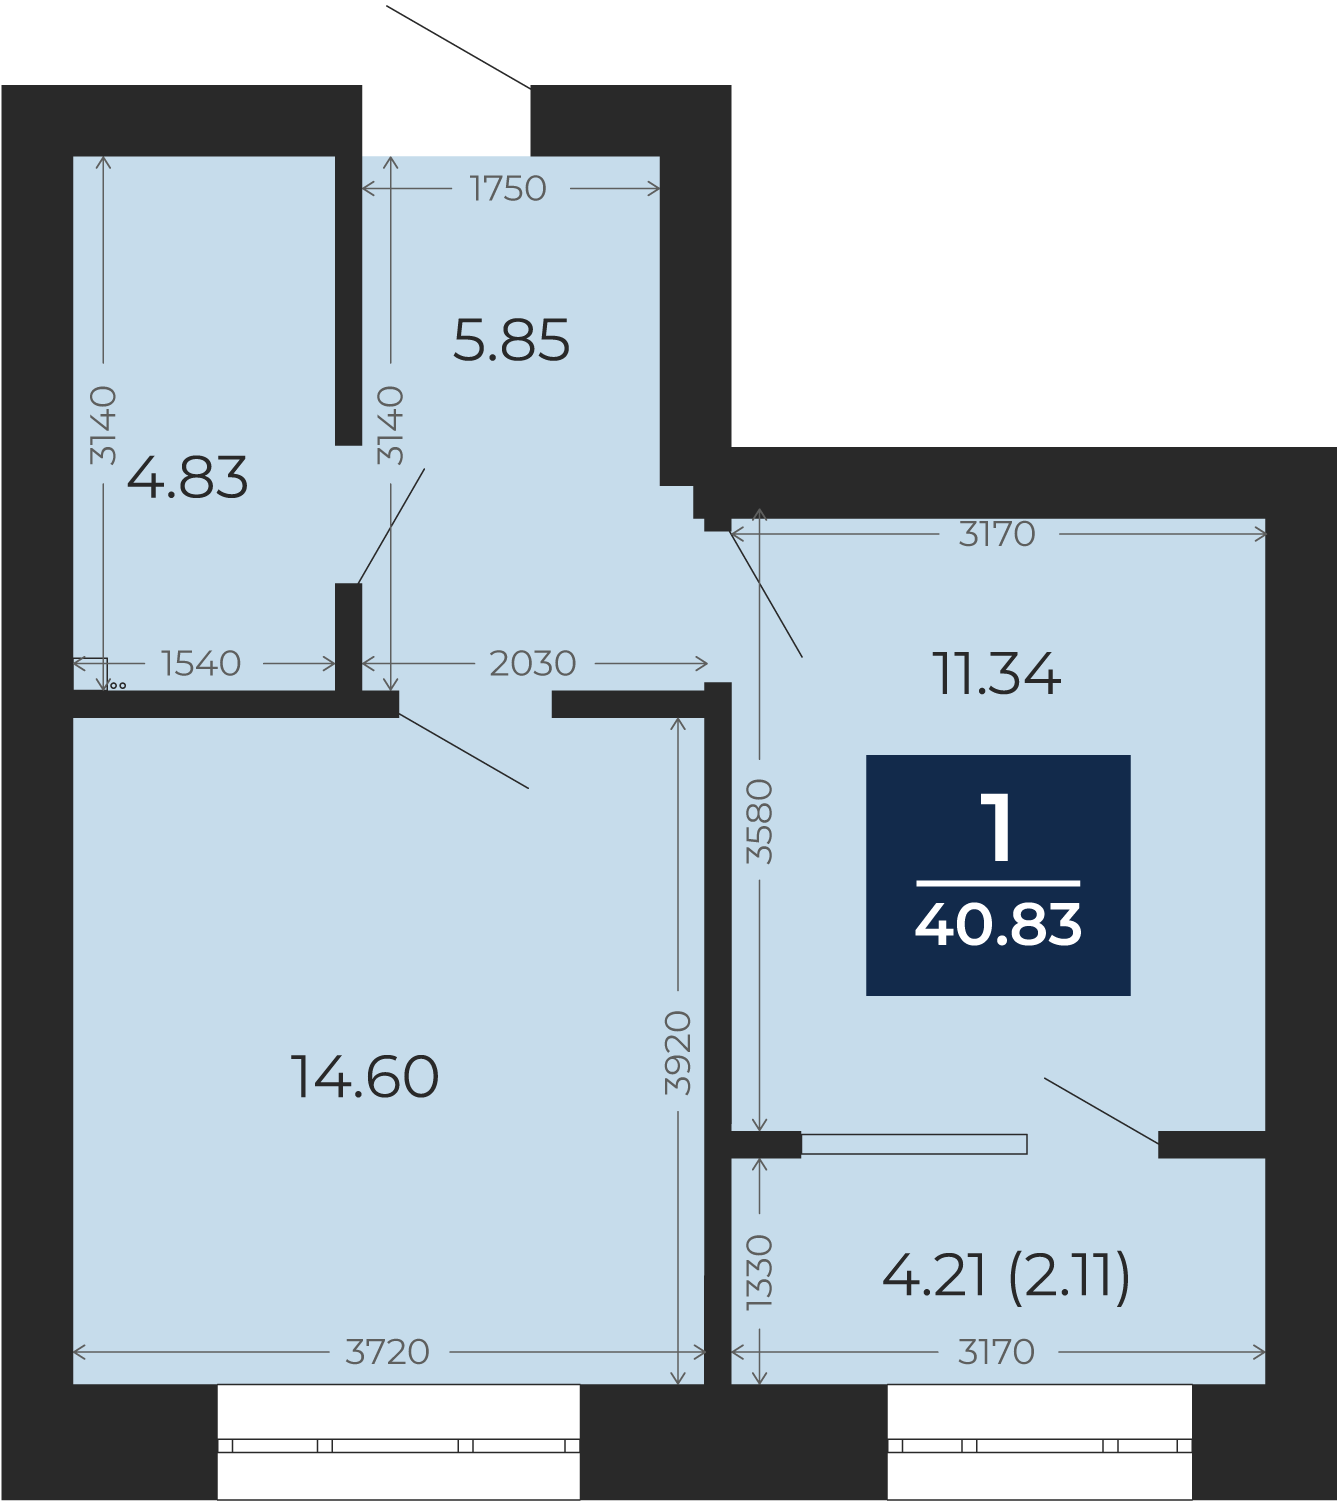 Квартира № 189, 1-комнатная, 40.83 кв. м, 12 этаж